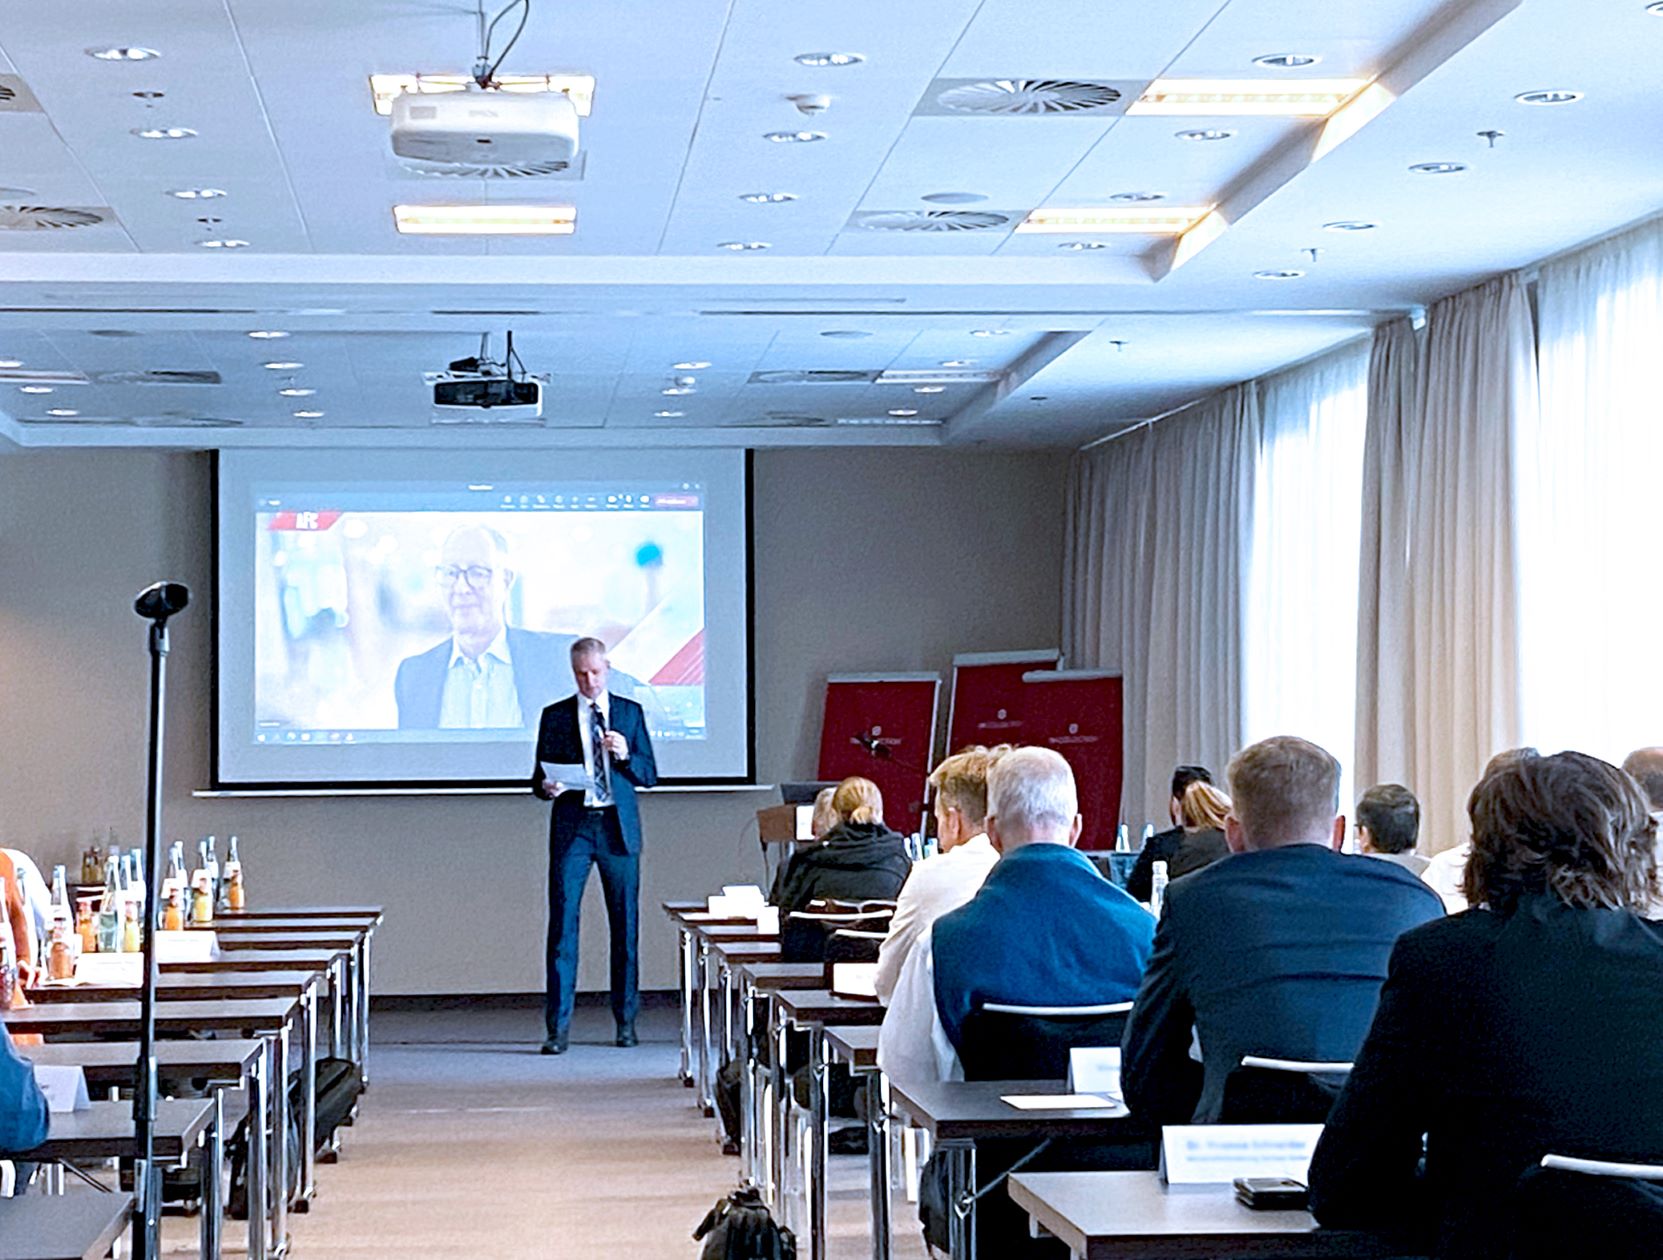 Auf dem Bild ist der Moderator der Veranstaltung, Dr. Marc Mauermann vom Fraunhofer IVV mit sitzenden Teilnehmenden vor einer Präsentationsleinwand zu sehen.